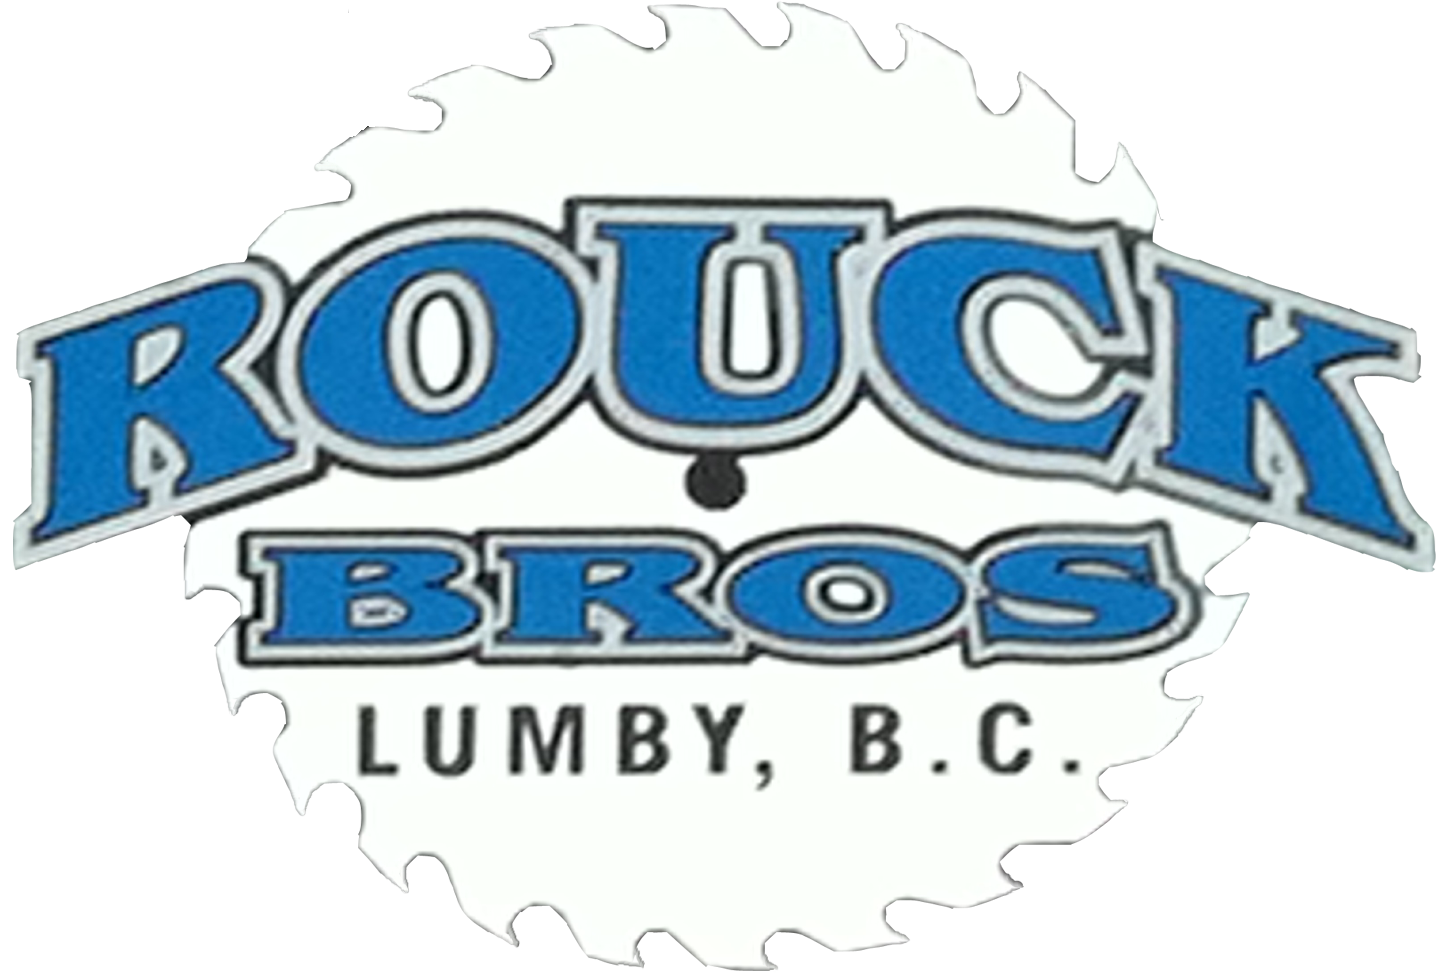 Rouck Bros Sawmill Ltd. 